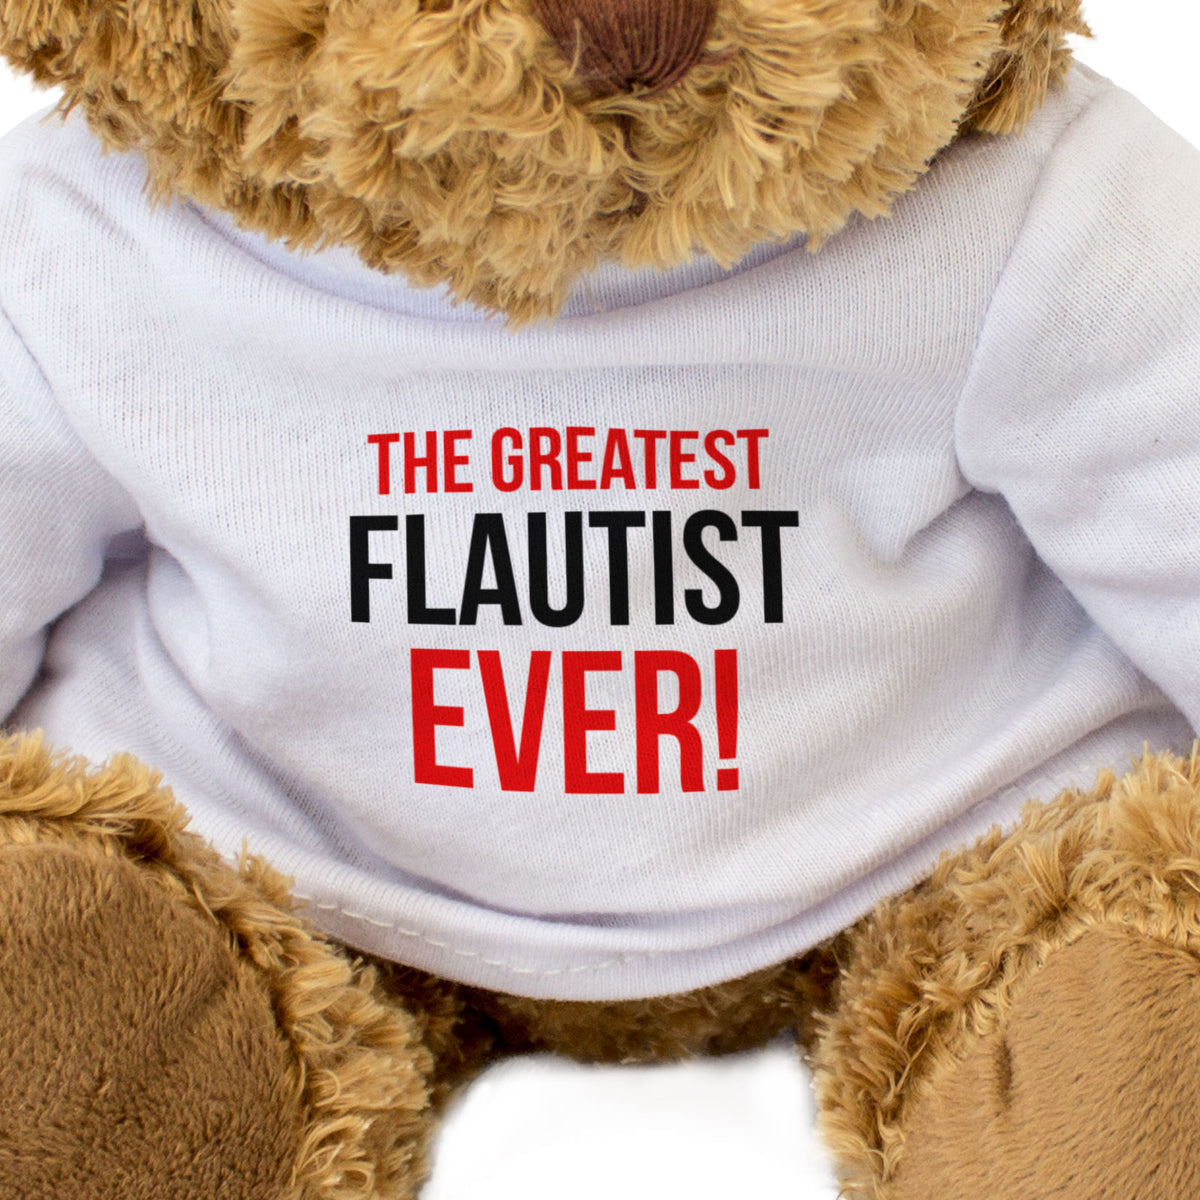 The Greatest Flautist Ever - Teddy Bear